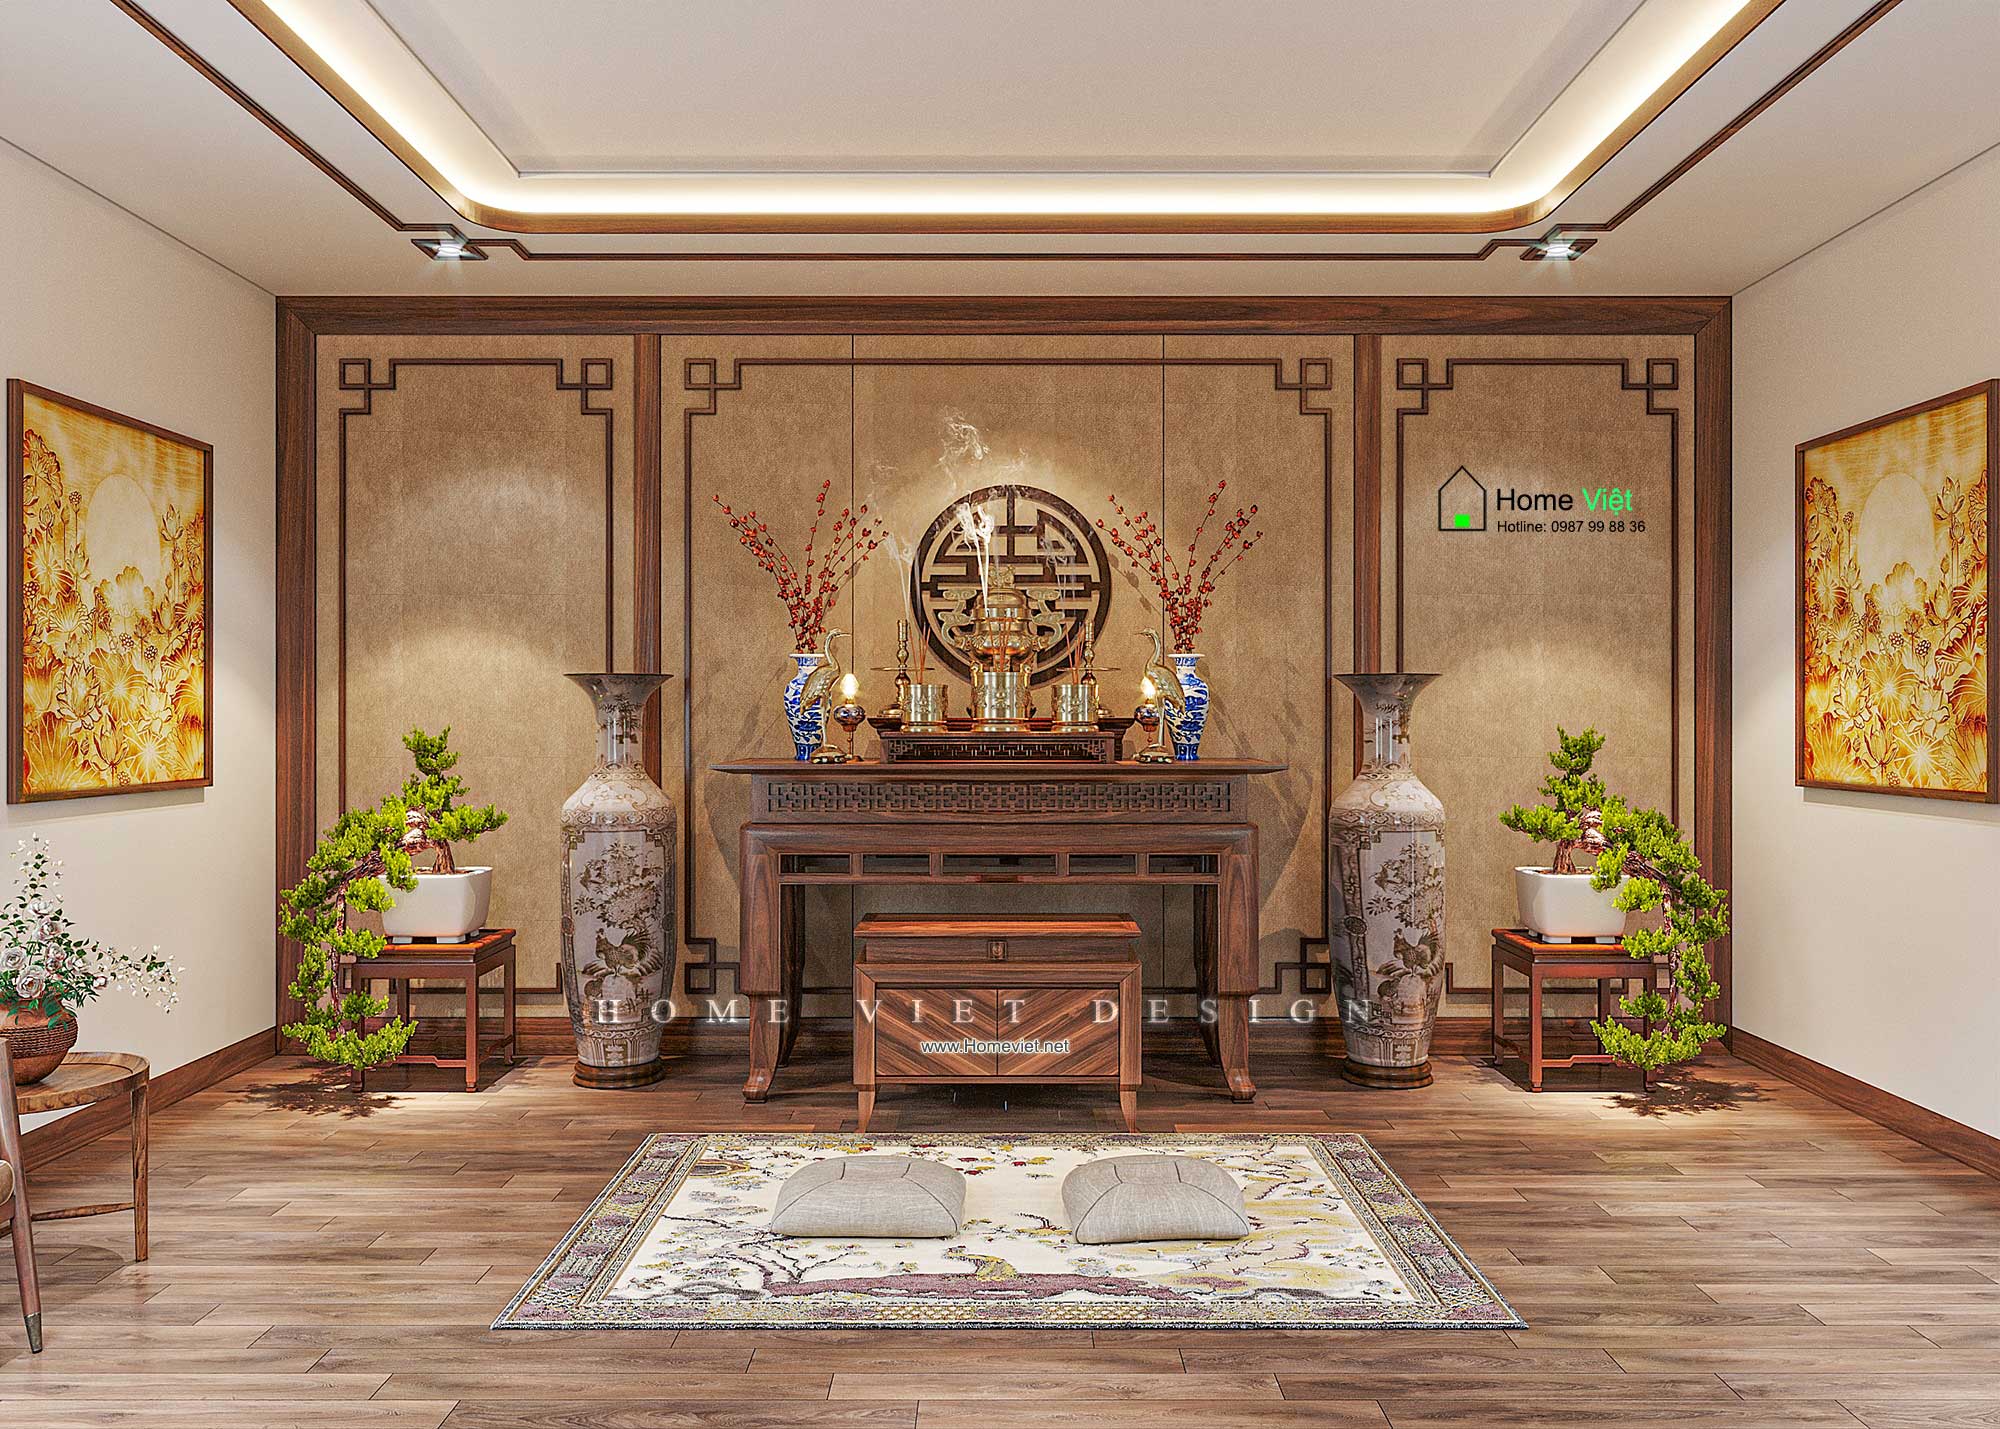 Quang Villa – Thiết kế nội thất Biệt thự 3 tầng Tân Cổ Điển nhẹ chất liệu gỗ Óc Chó tại Long Biên, Hà Nội